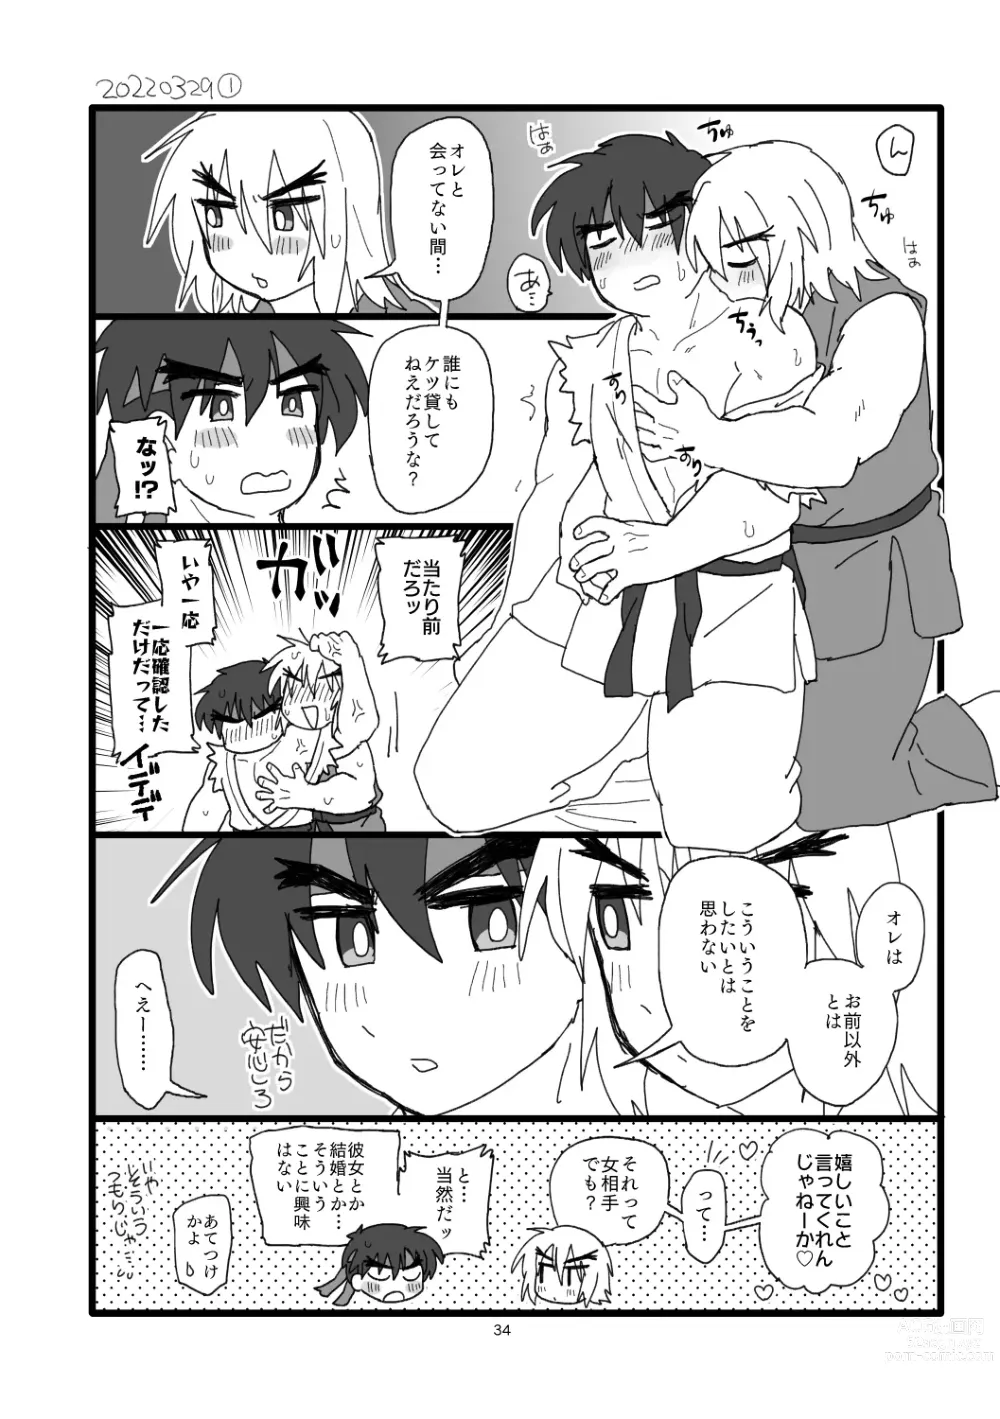 Page 33 of doujinshi Kobushi Kiss